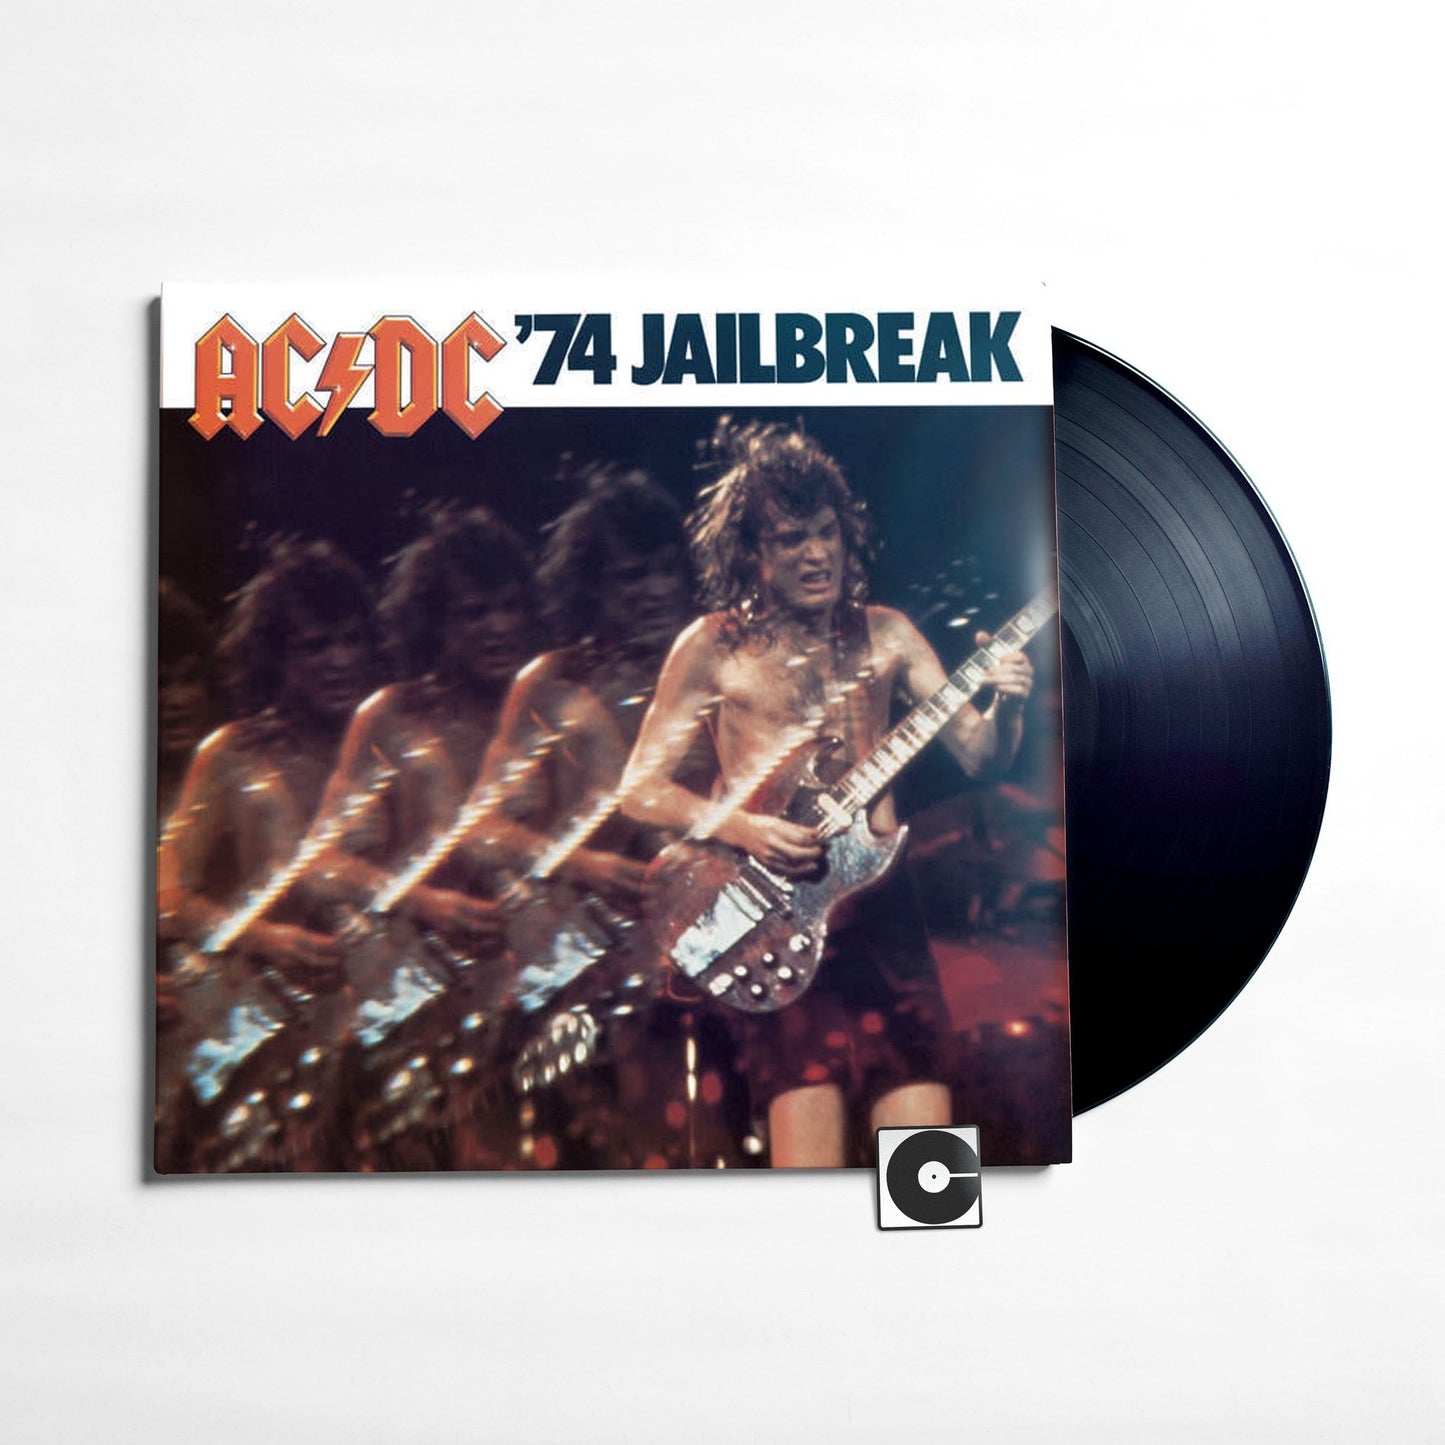 AC/DC - "'74 Jailbreak"